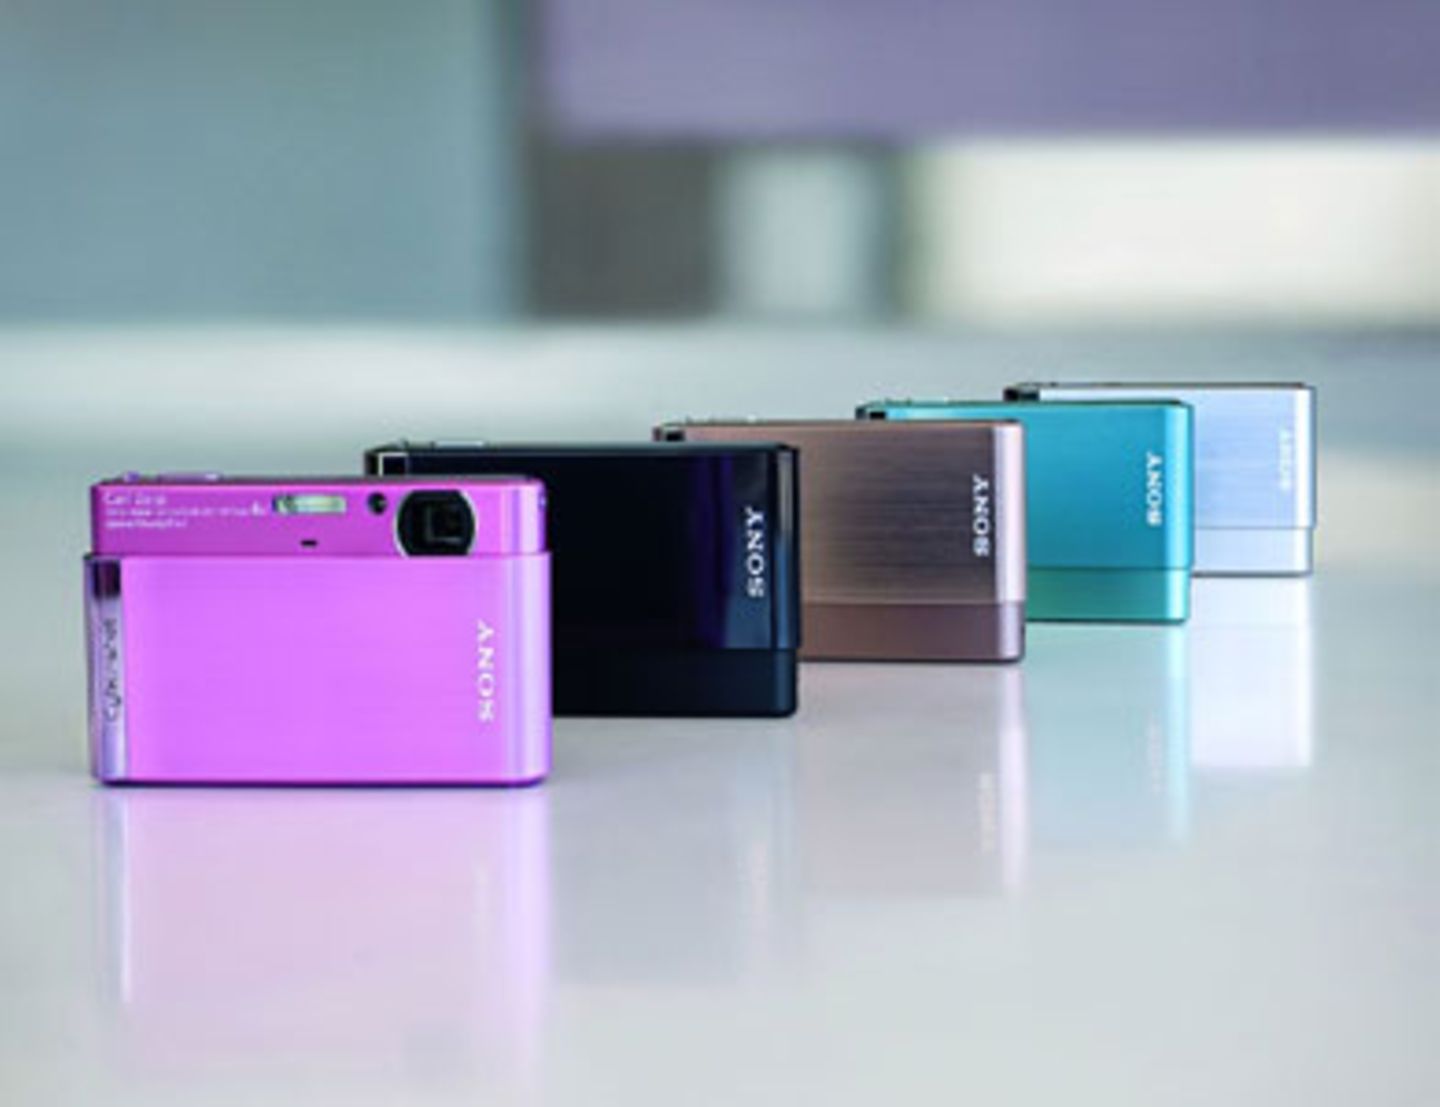 Die Sony DSC-T90 Digitalkamera besitzt neben einem stilvollen Design auch einen großen Touchscreen und liefert Filmaufnahmen in HD-Qualität. Das Model bekommt ihr in den Farben pink, schwarz, braun, türkis und silber. Um 330 Euro bei Sony.